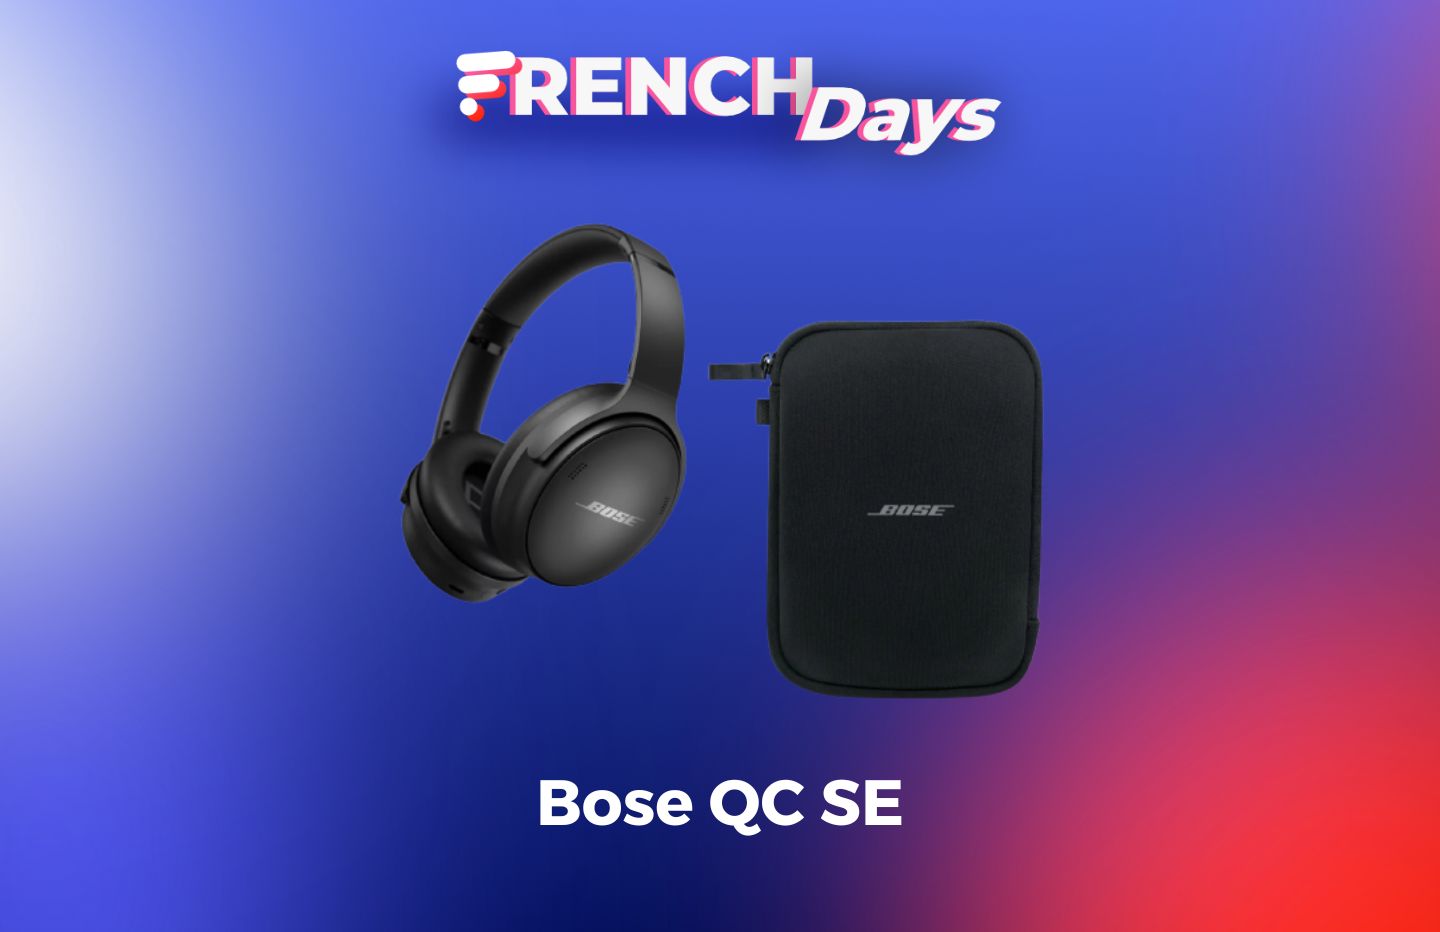 Bose : la copie conforme de l'excellent casque QC 45 chute à 179 €  seulement pour les French Days